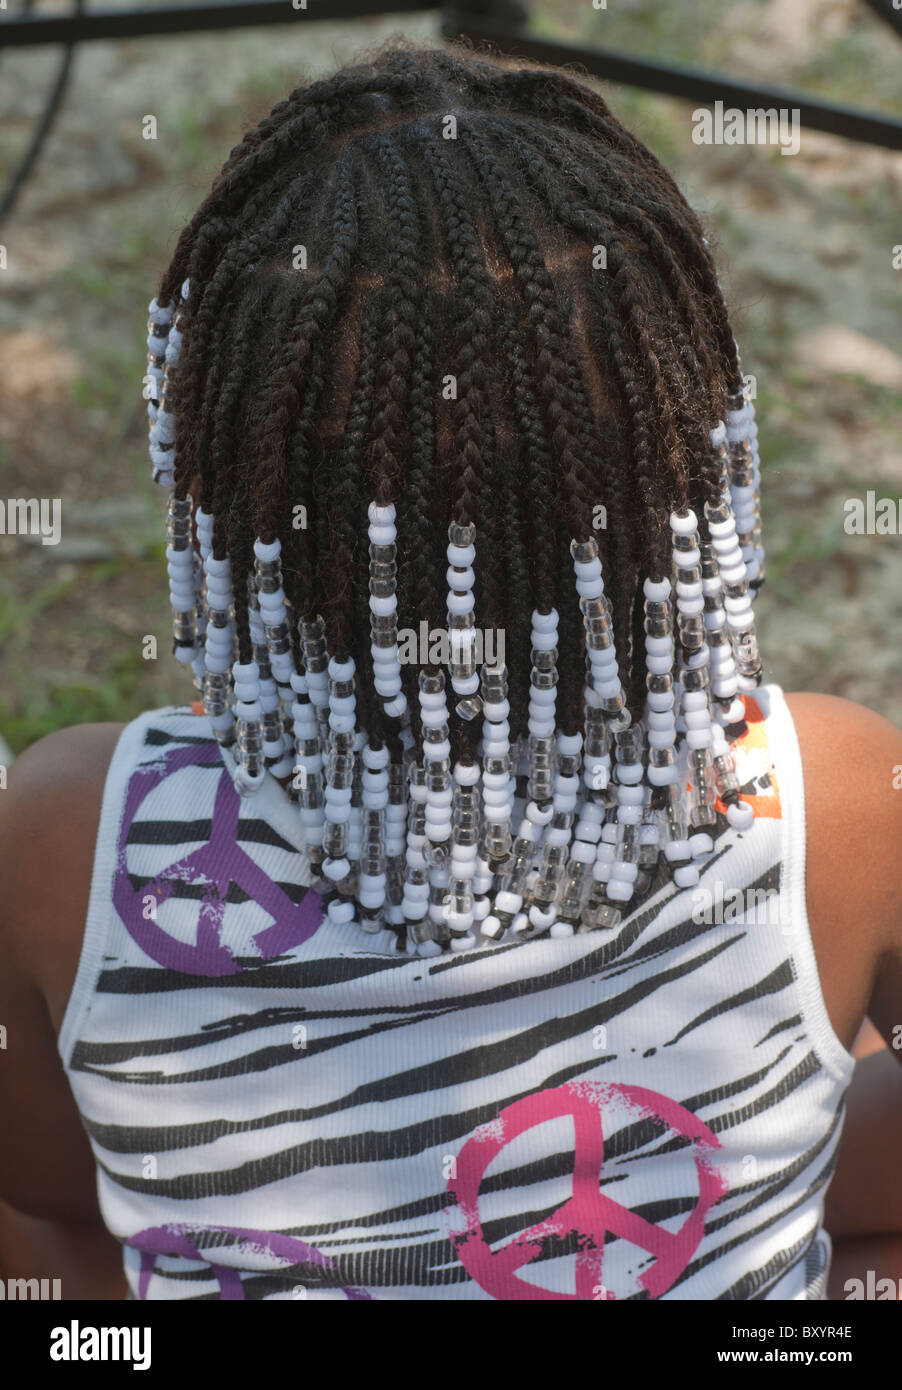 Pioneer Days Festival High Springs Florida. Giovane ragazza con corna di capelli fantasia e indossare una camicia decorata con simboli di pace. Foto Stock